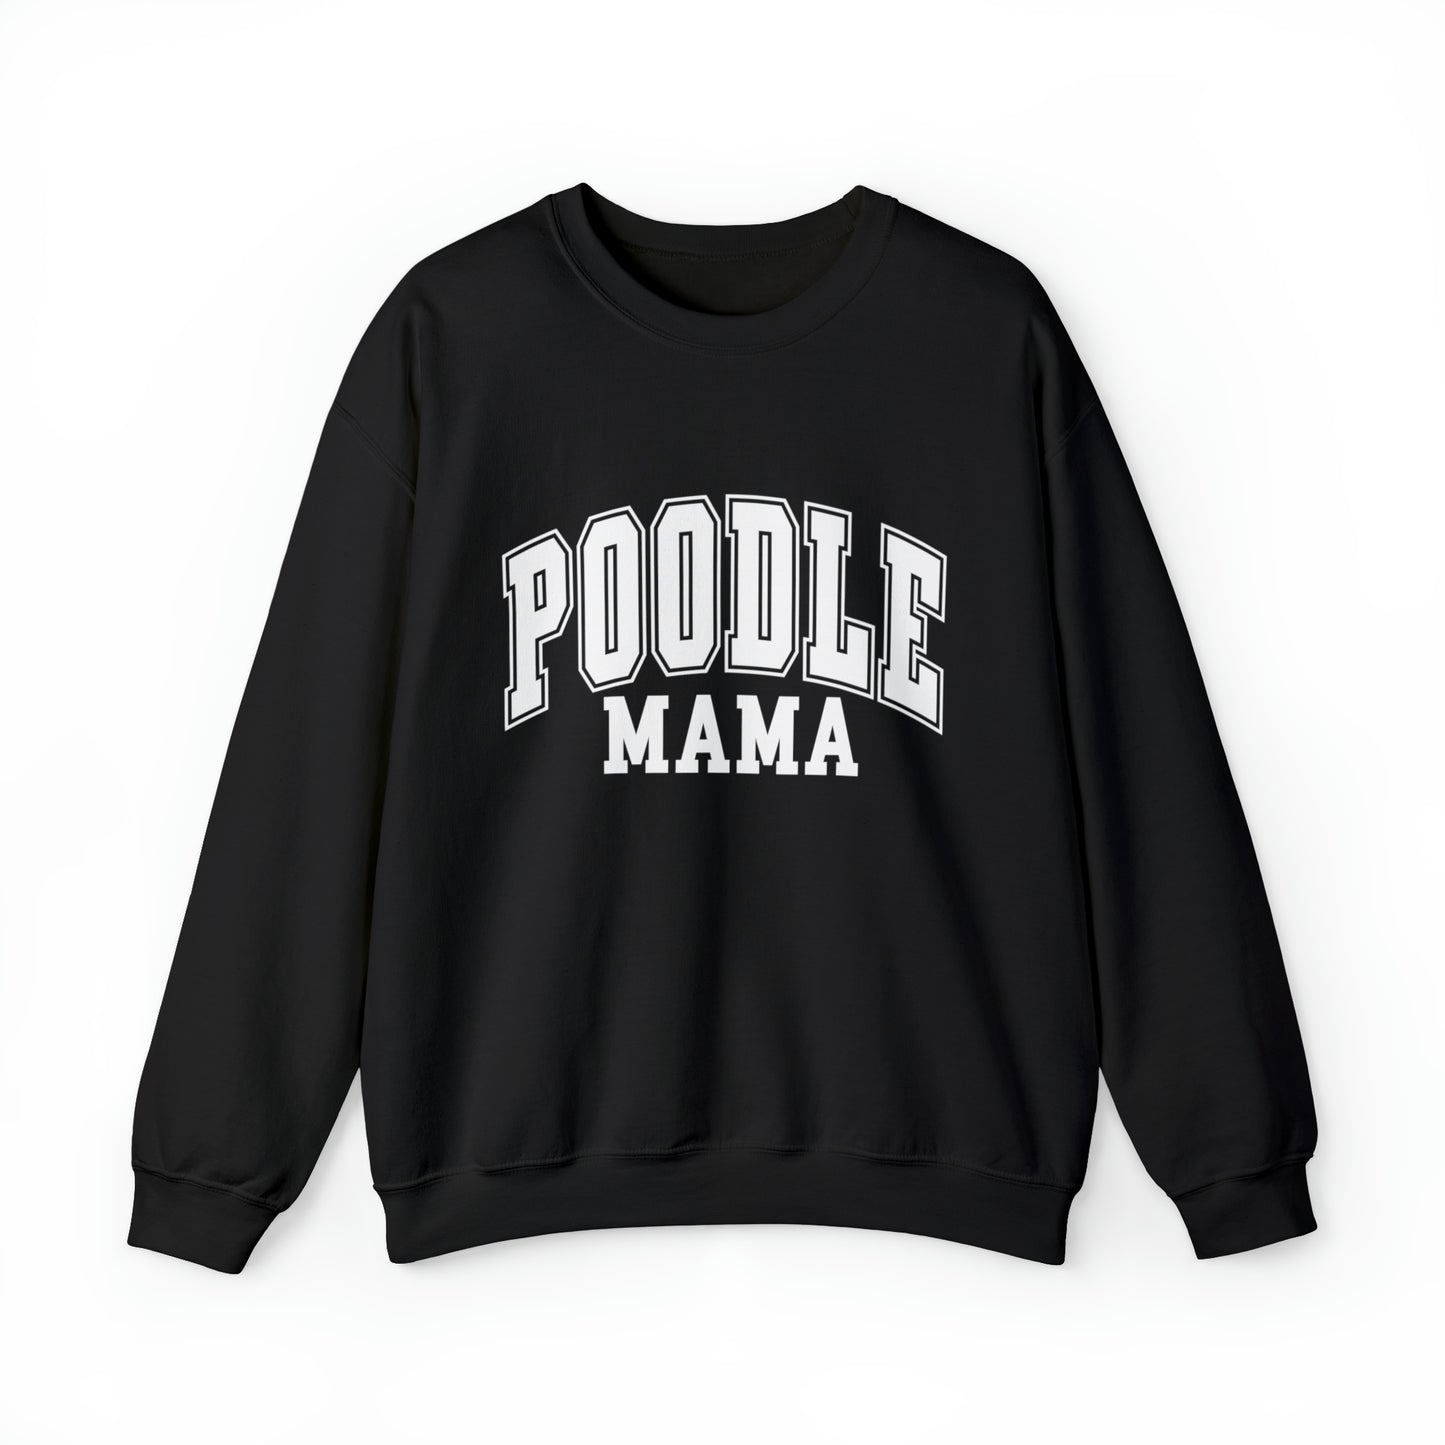 Poodle Mama Sweatshirt